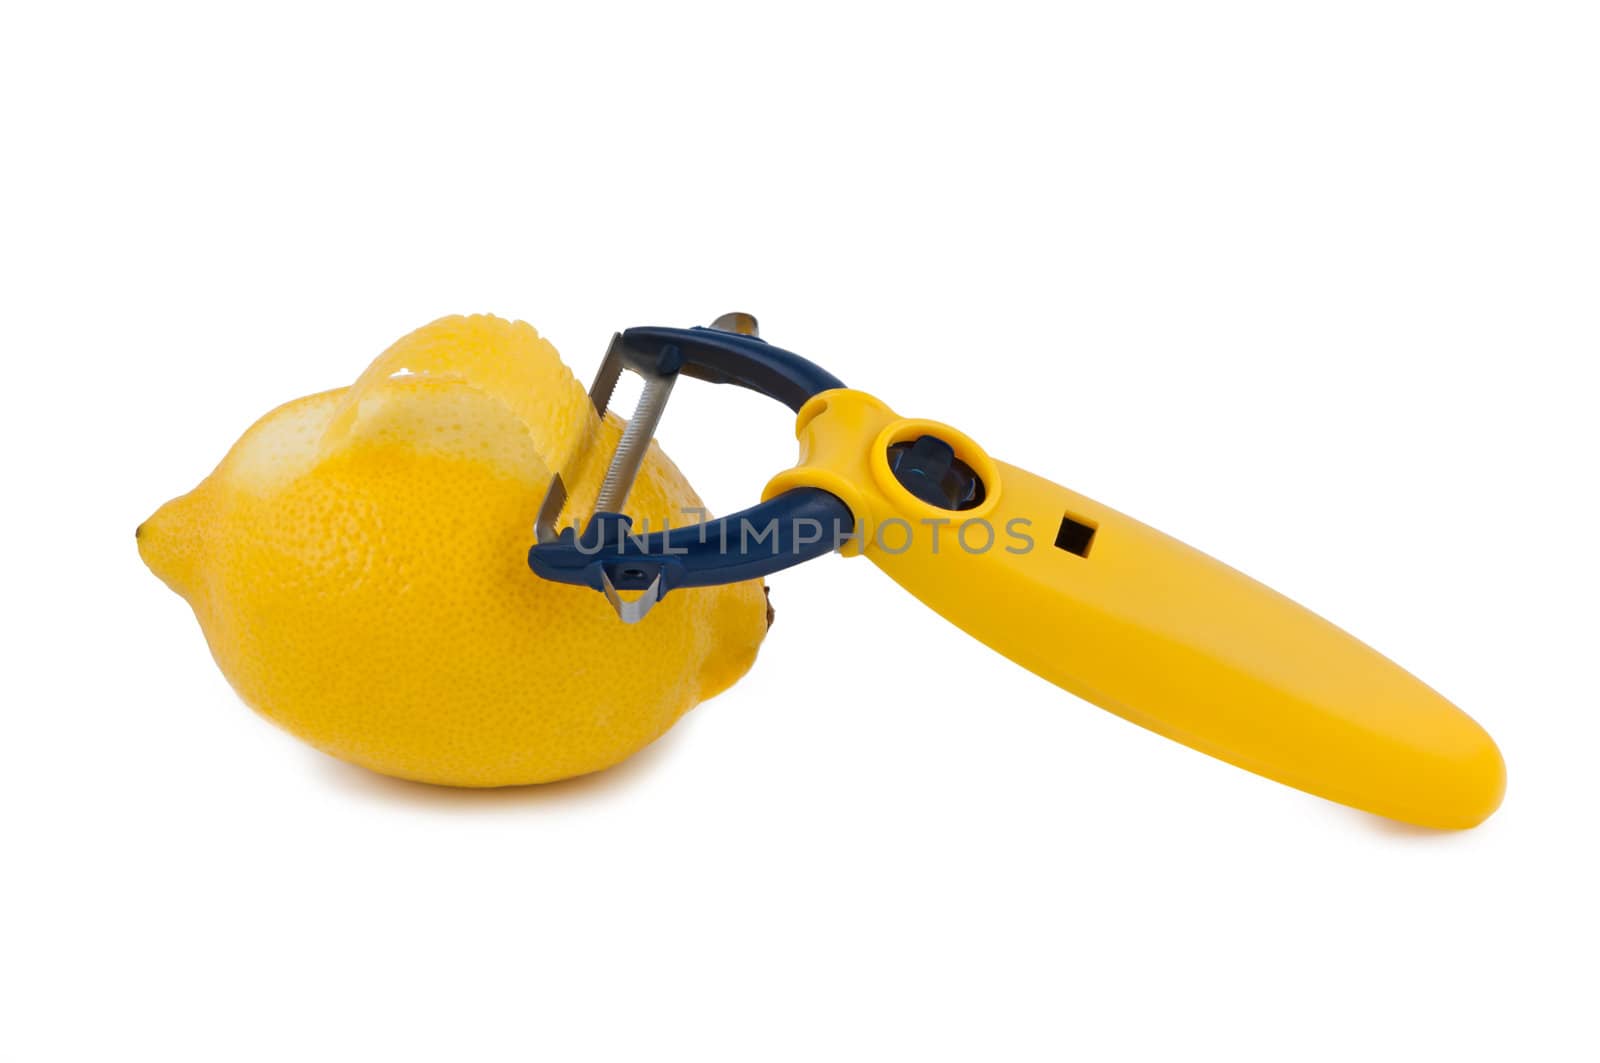 Fruit-knife with lemon isolated on white background.